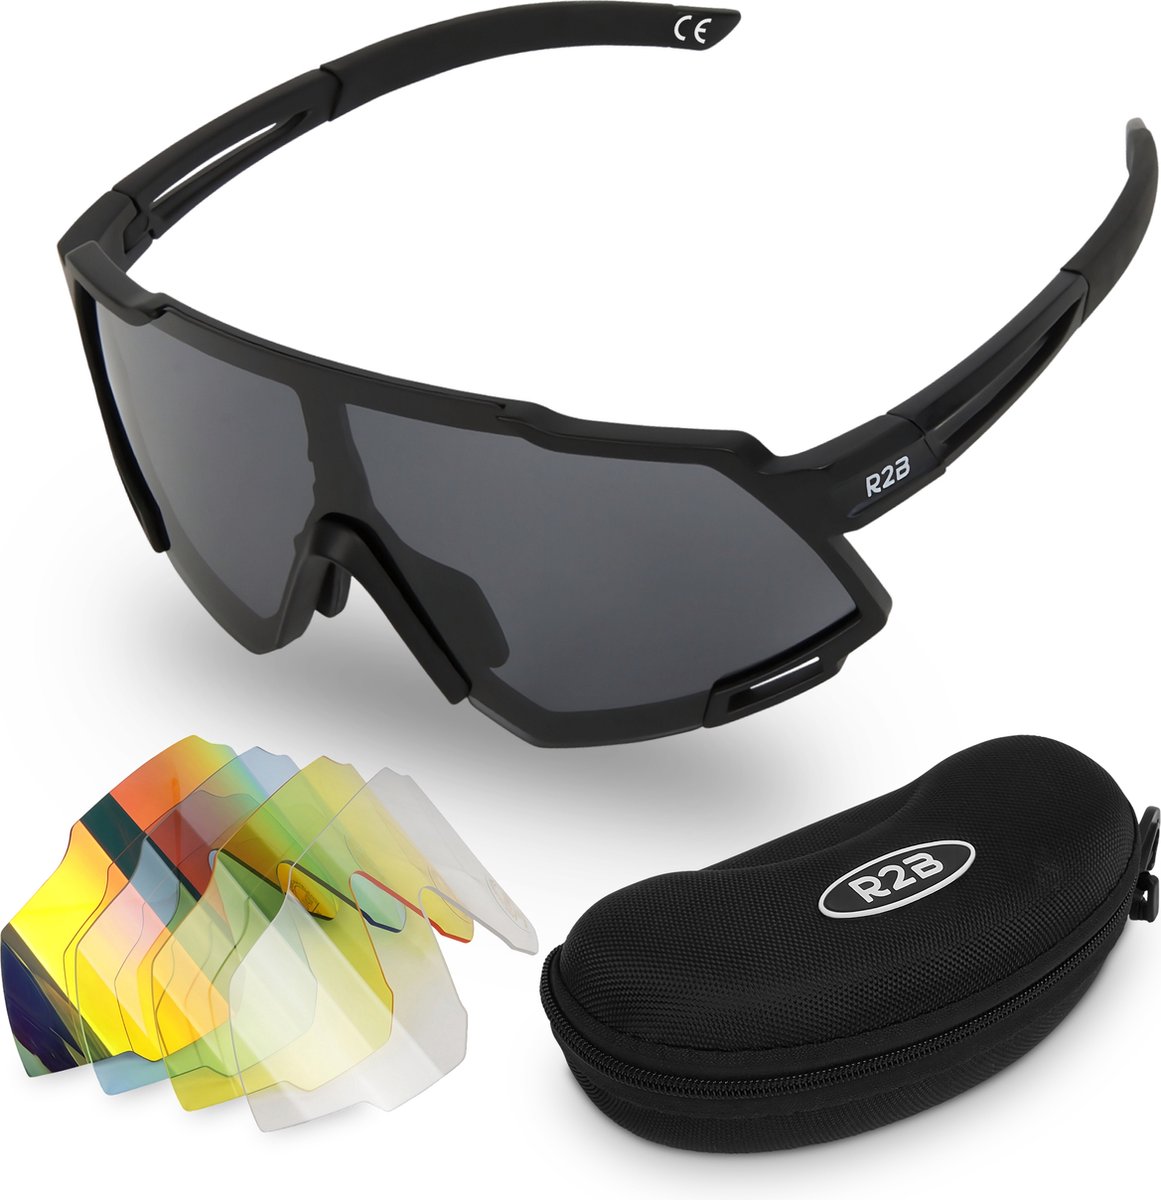 R2B® Fietsbril met 5 verwisselbare lenzen voor elk weertype - Unisex & Universeel - Sportbril - Zonnebril voor Heren en Dames - Fietsaccessoires - Zwart - R2B